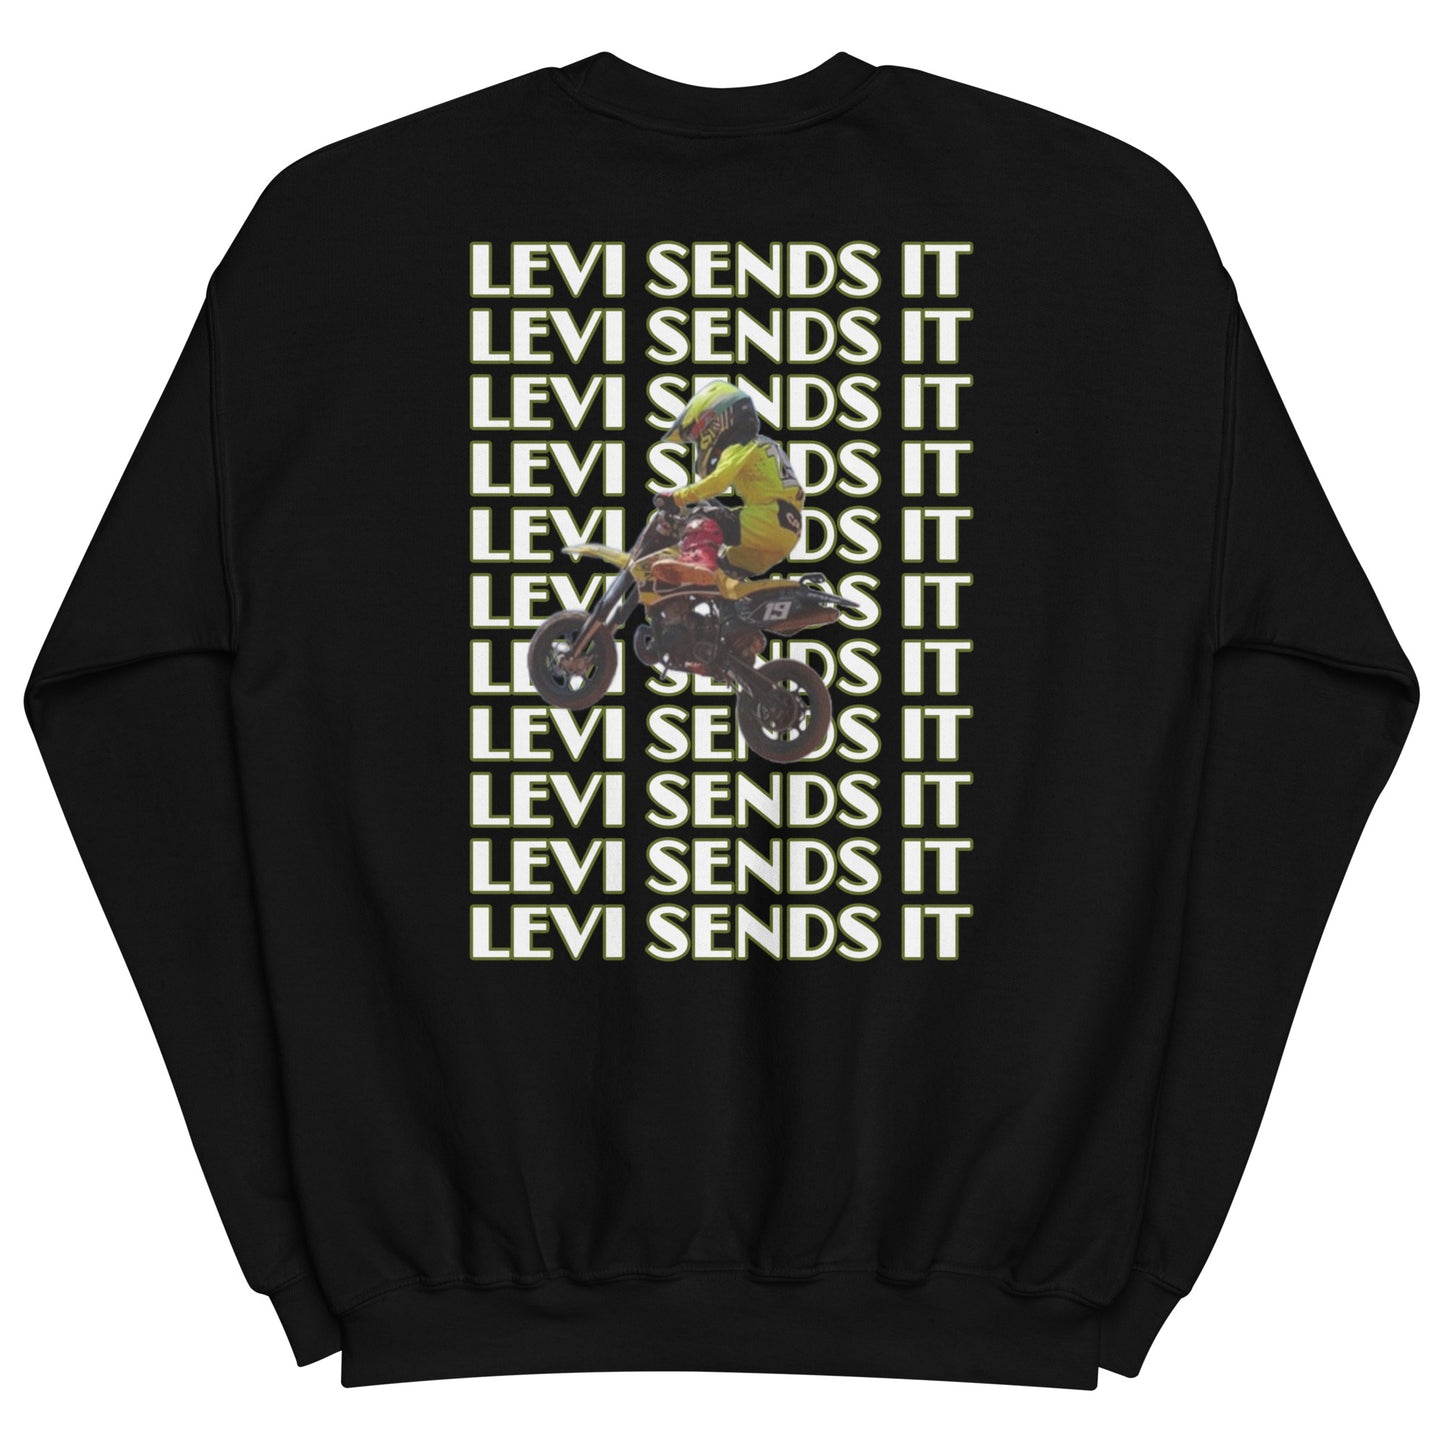 Levi McGregor Sweatshirt